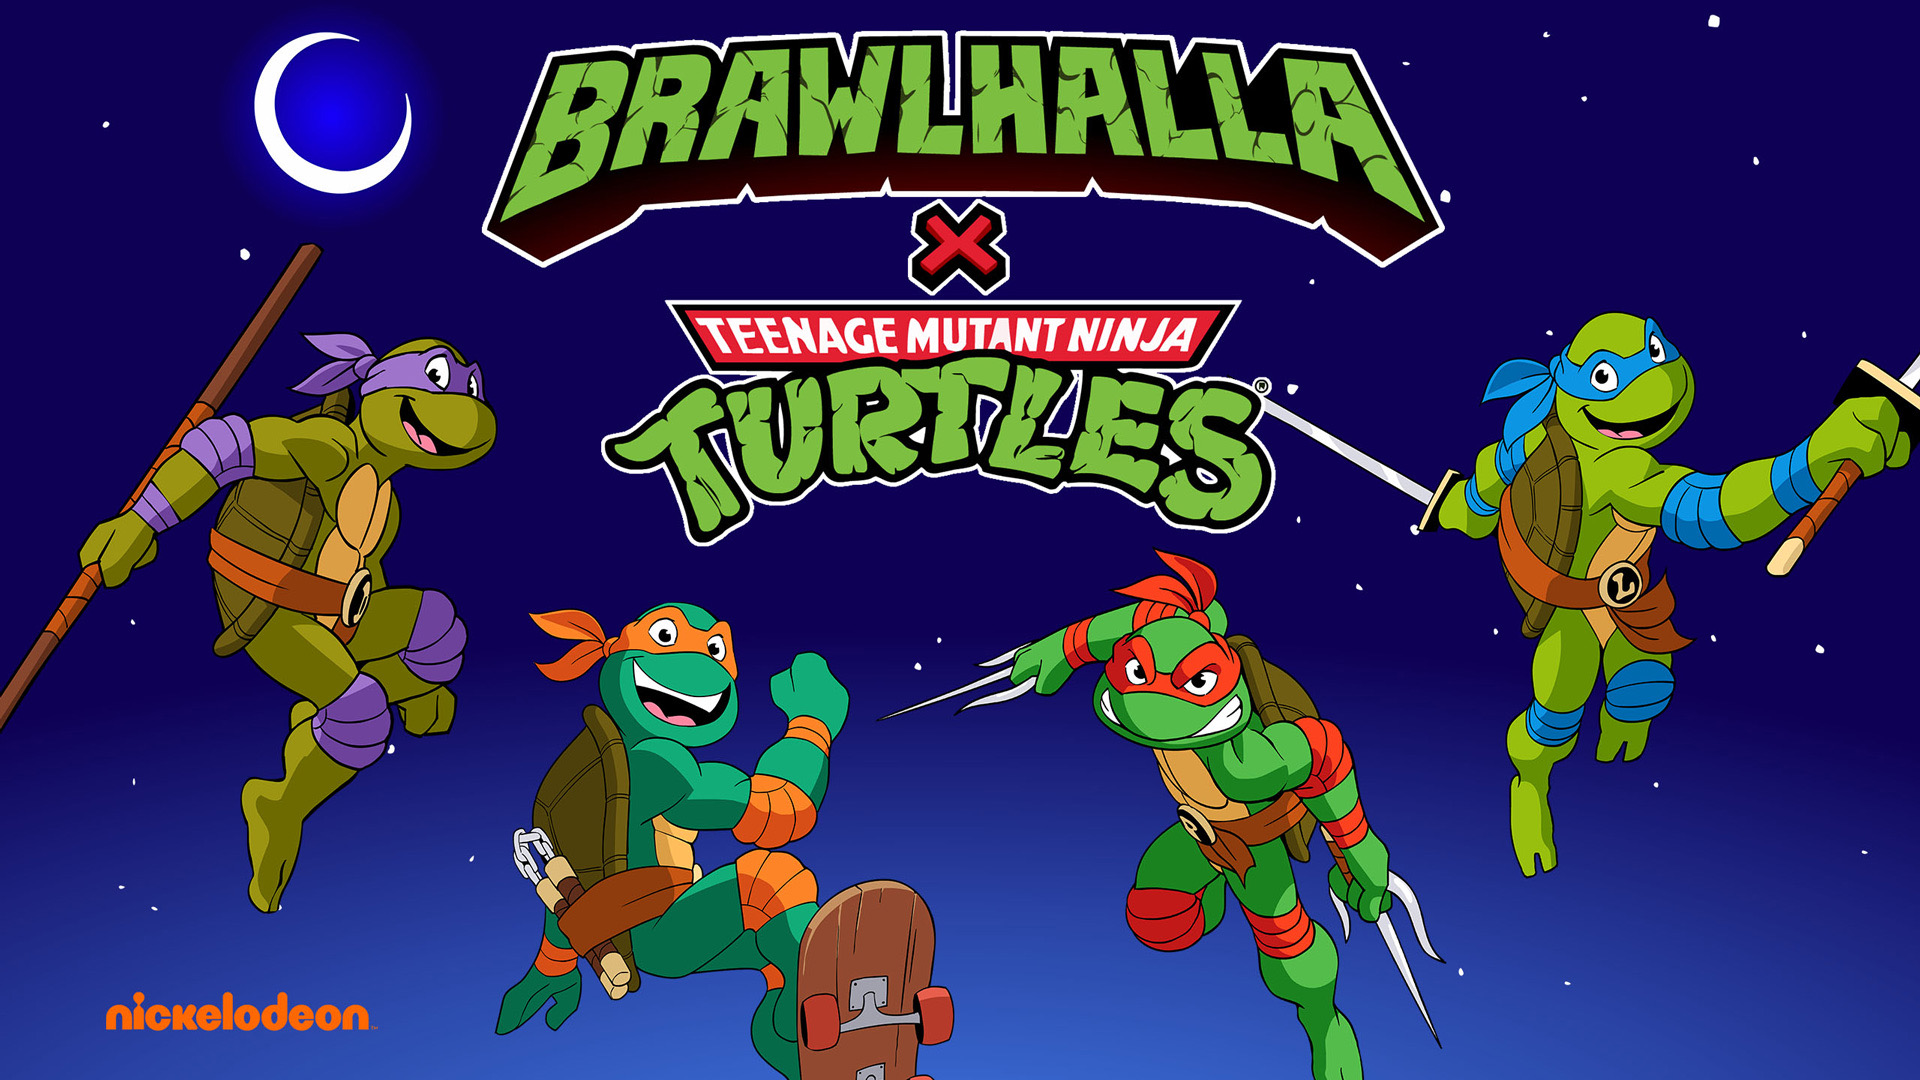 Teenage Mutant Ninja Turtles Brawlhalla Crossover